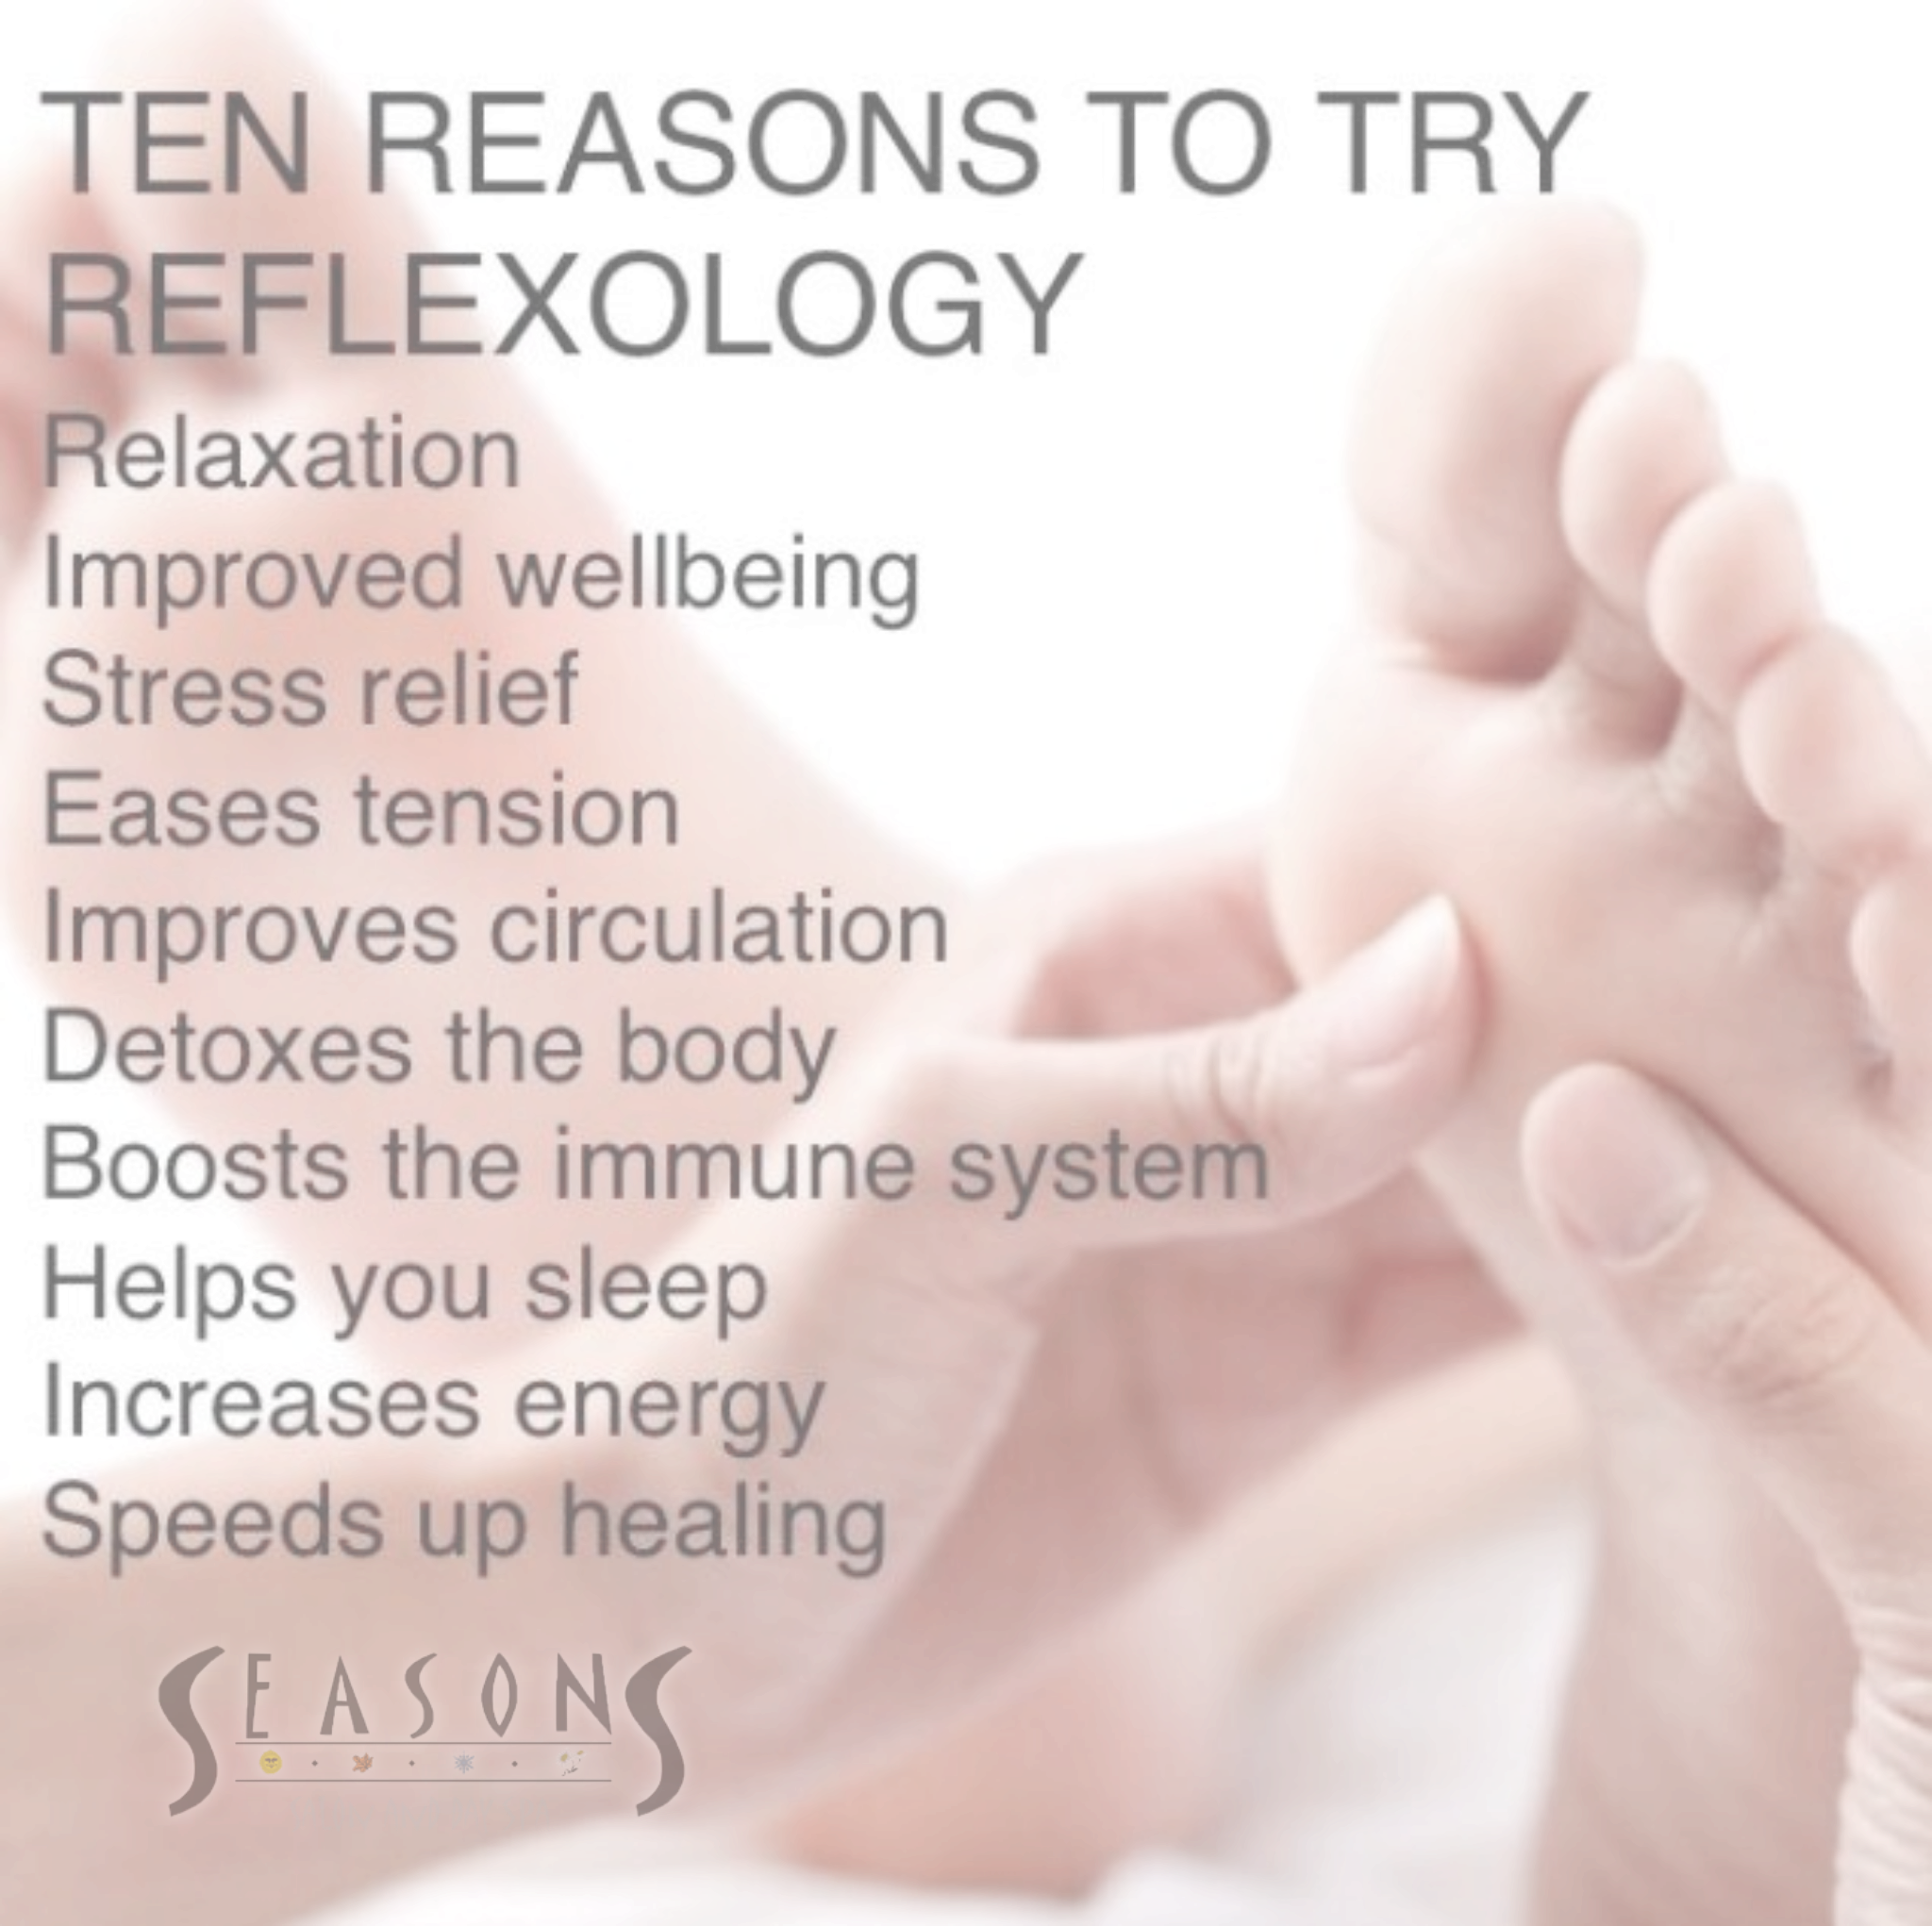 Reflexology benefits